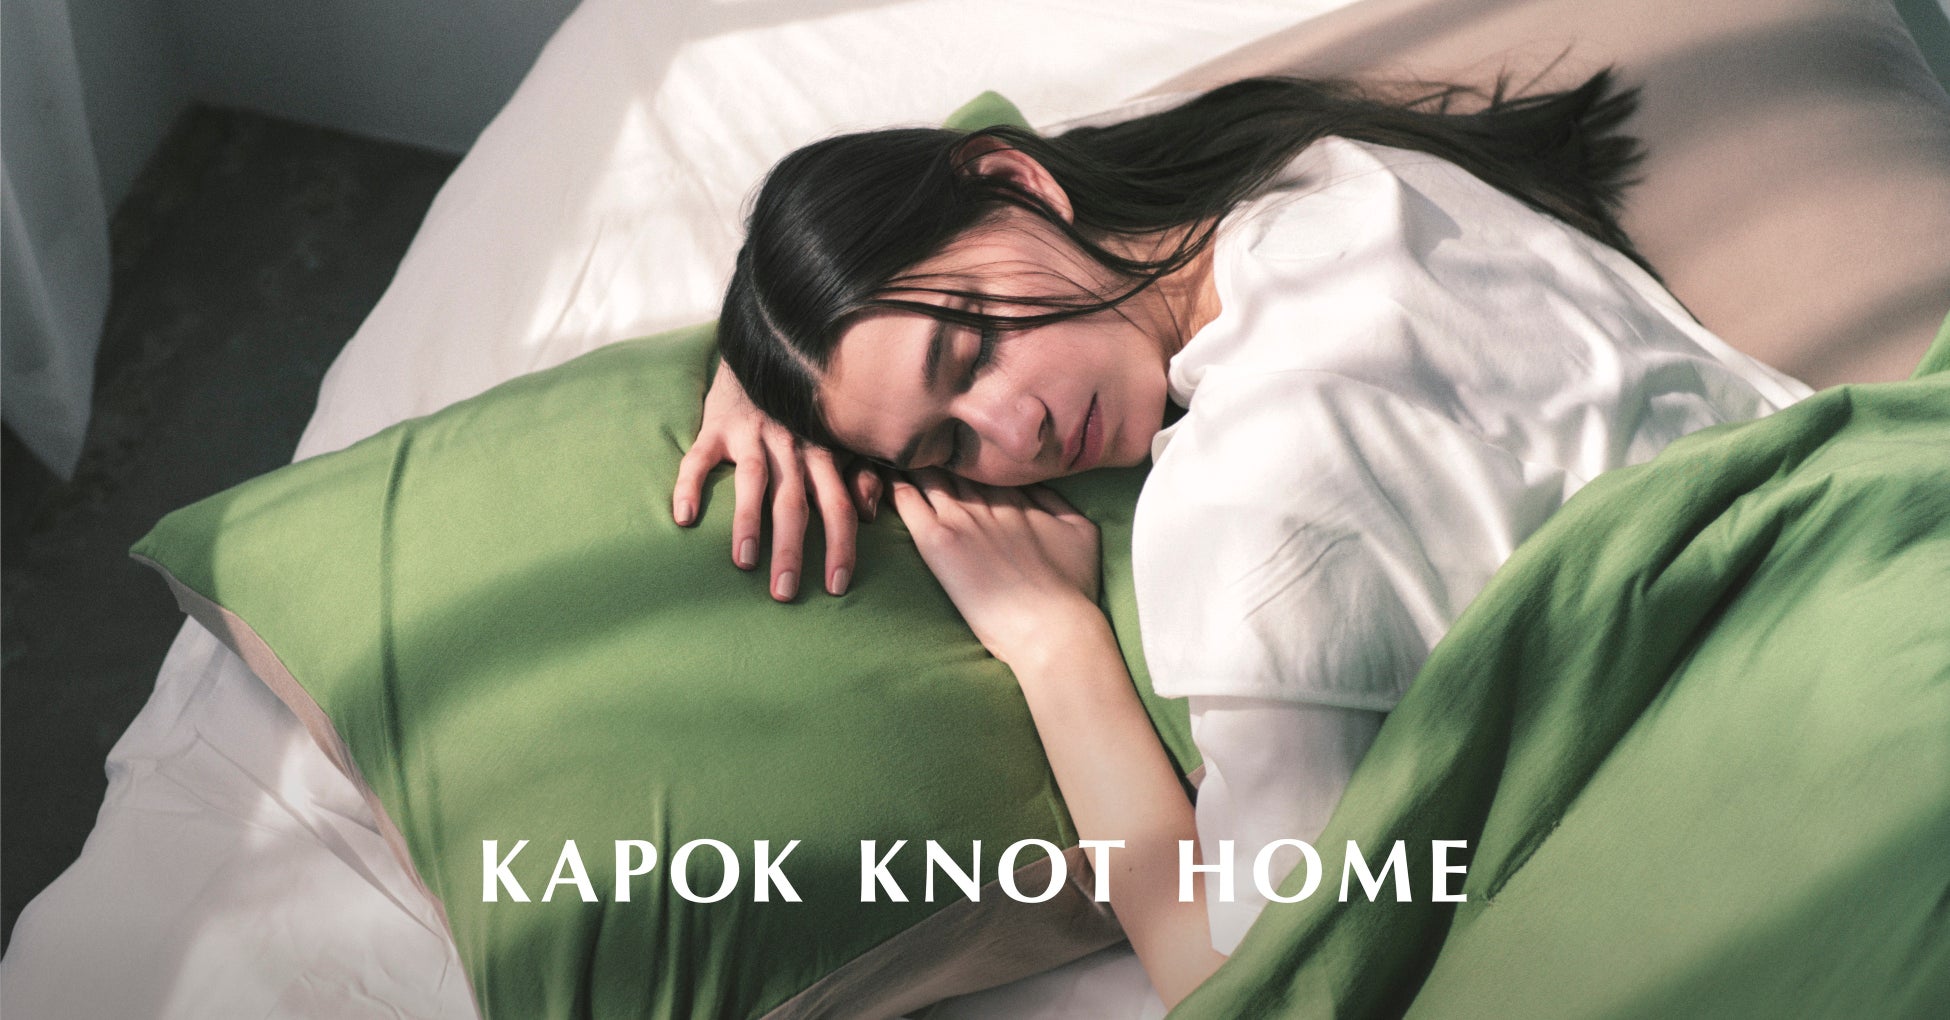 【サステナブルな新コレクション】木の実由来のファッションブランドKAPOK KNOTがブランド初のホームとSSコレクションをローンチ。3月21日(火)より順次発売開始のサブ画像1